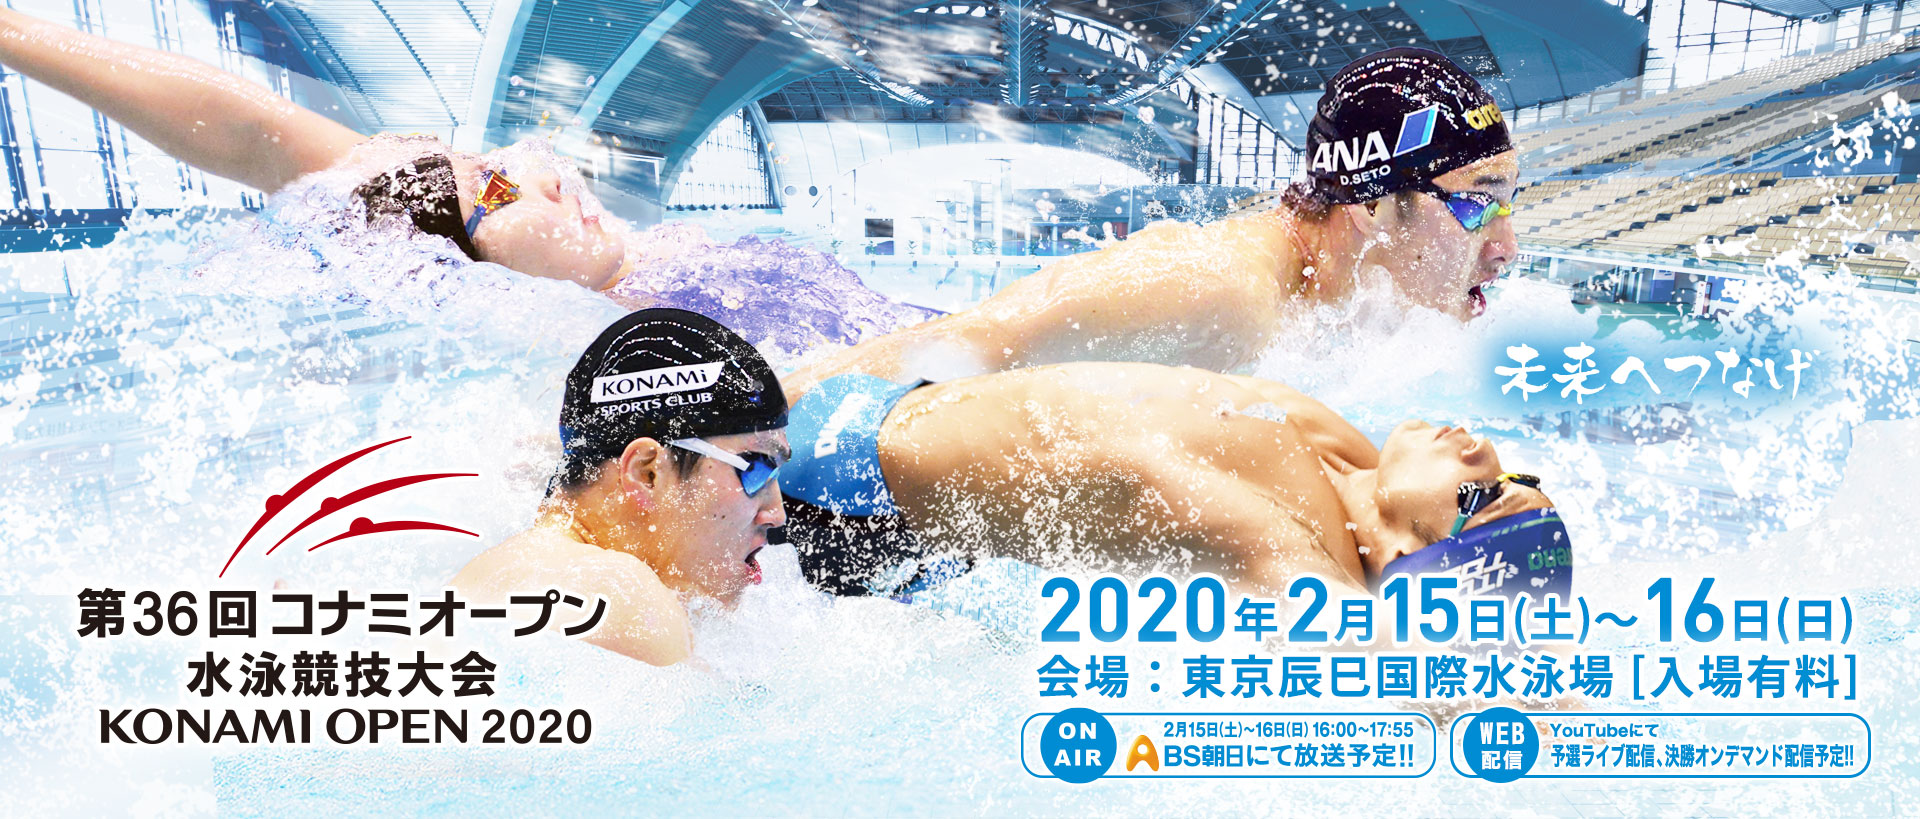 第36回 コナミオープン 水泳競技大会 KONAMI OPEN 2020